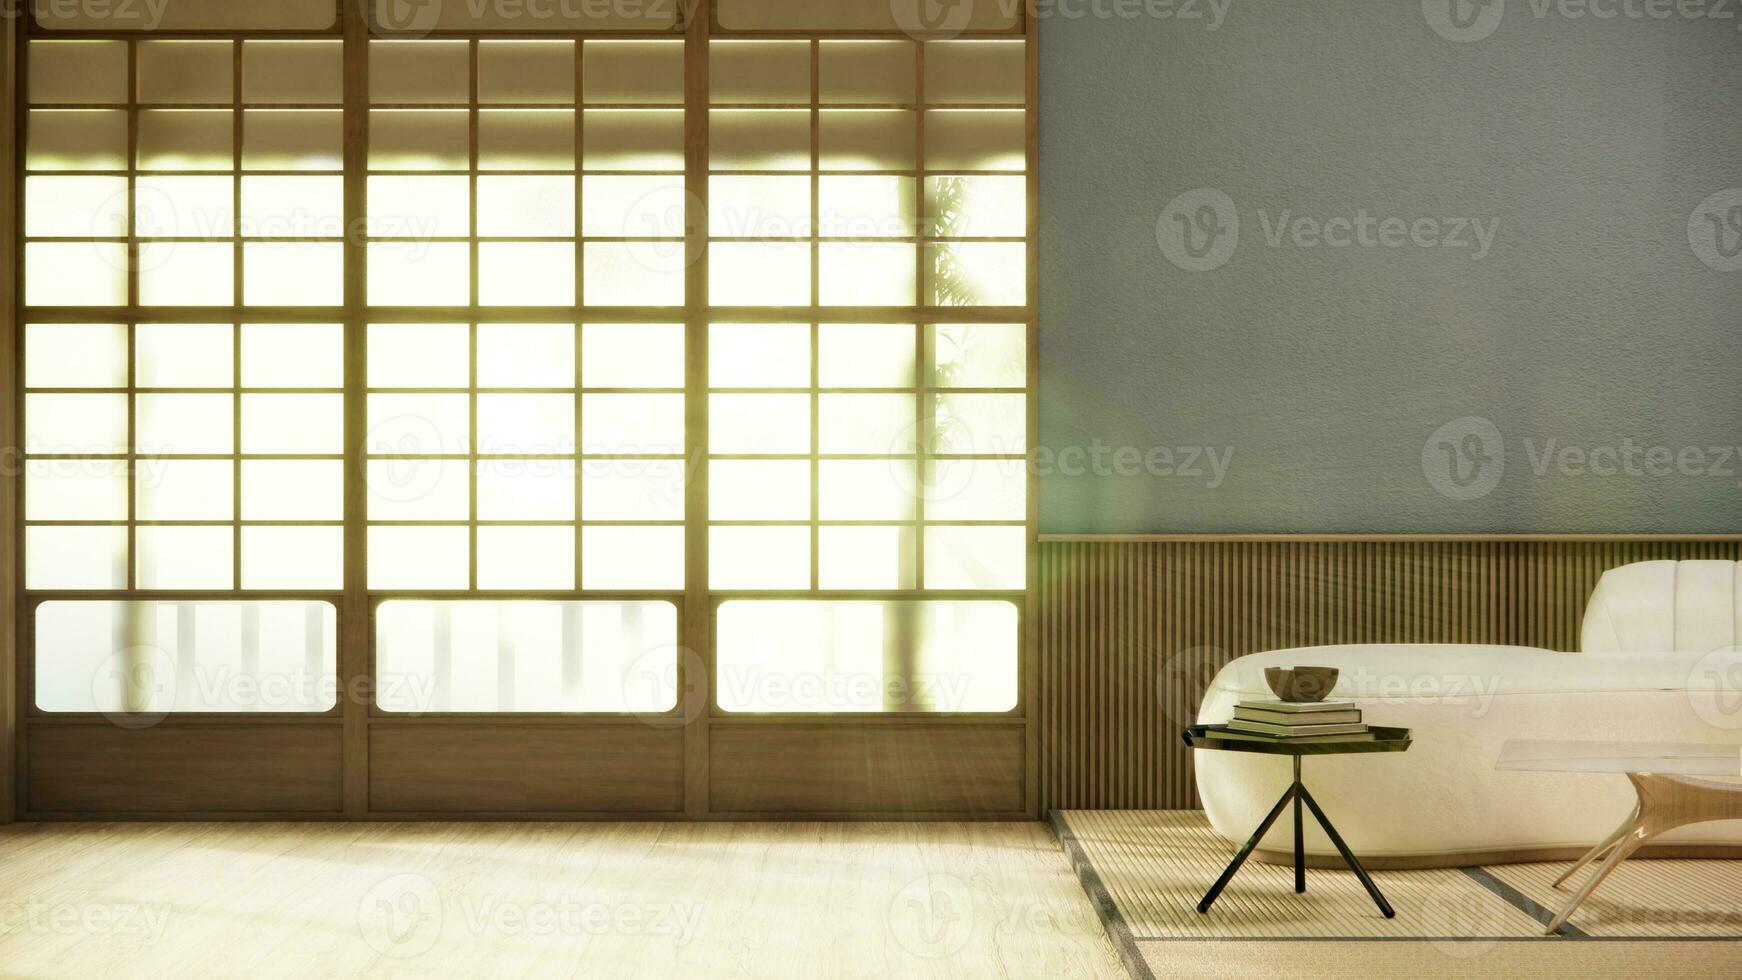 minimalista japandi estilo vivo habitación decorado con sofá.3d representación foto